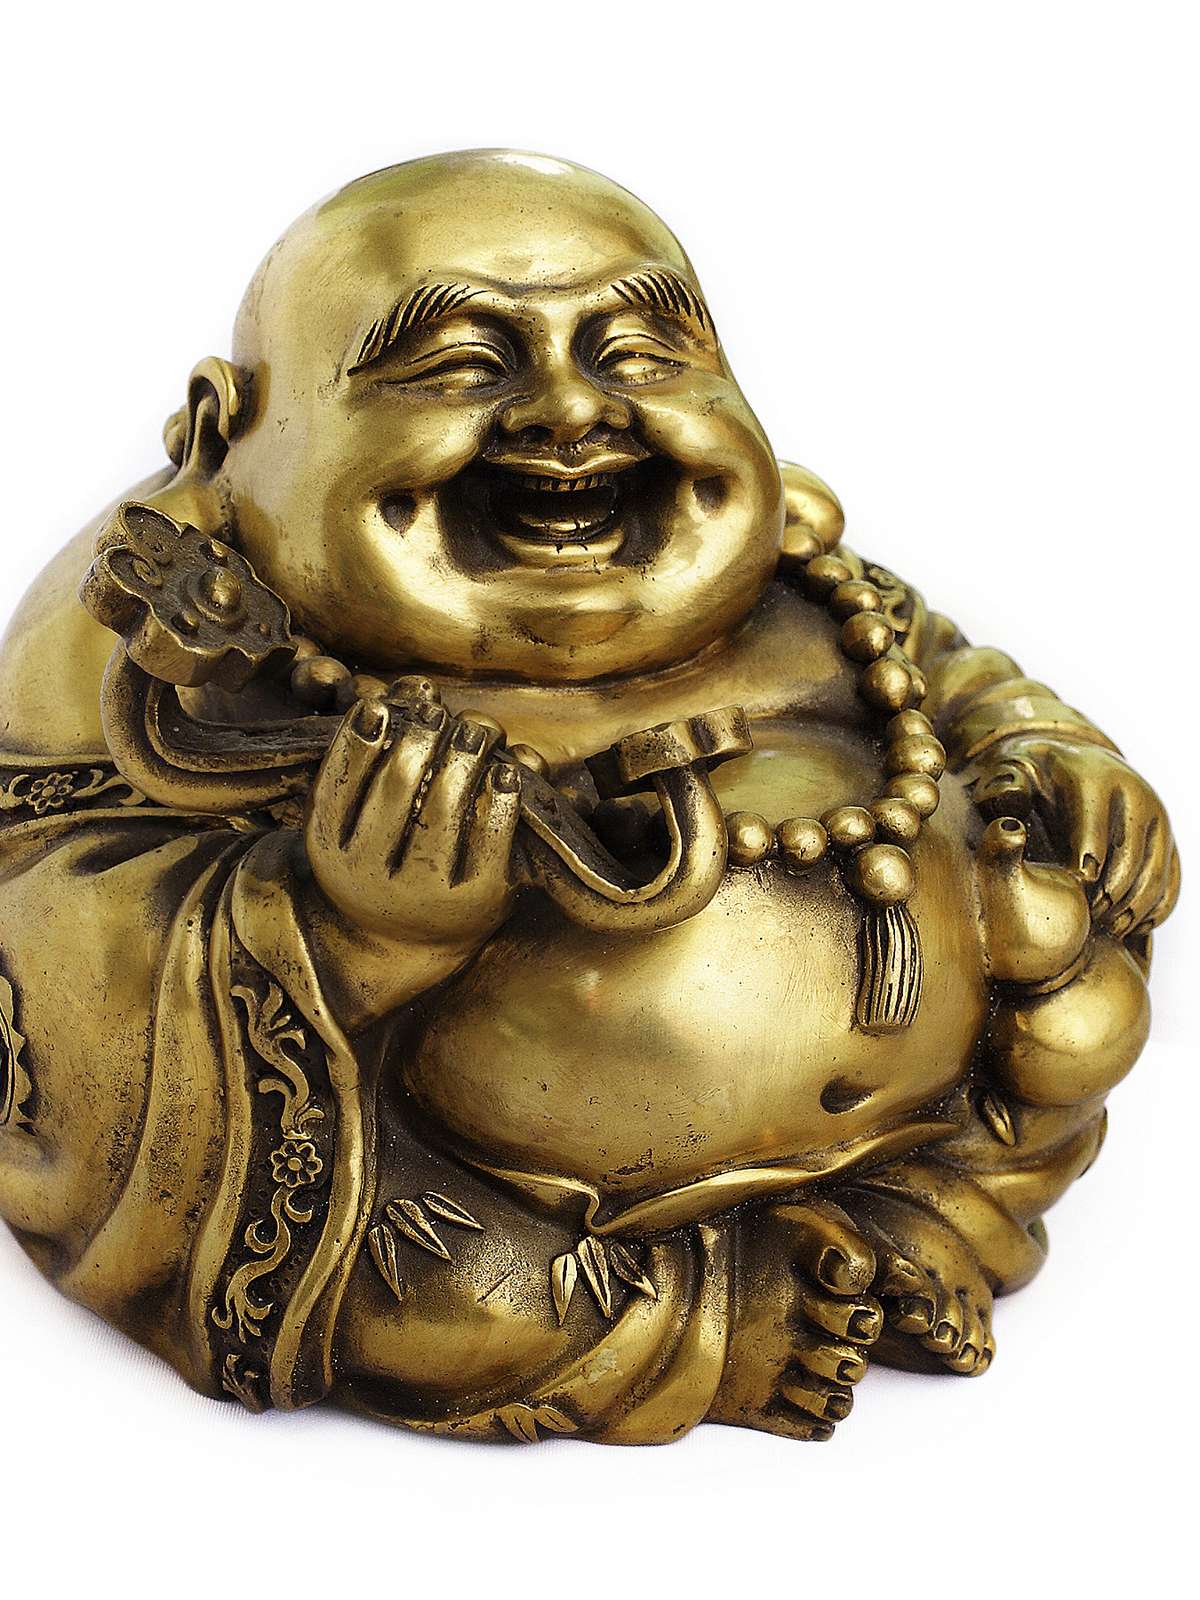  At drømme om Buddha: Hvad betyder det?